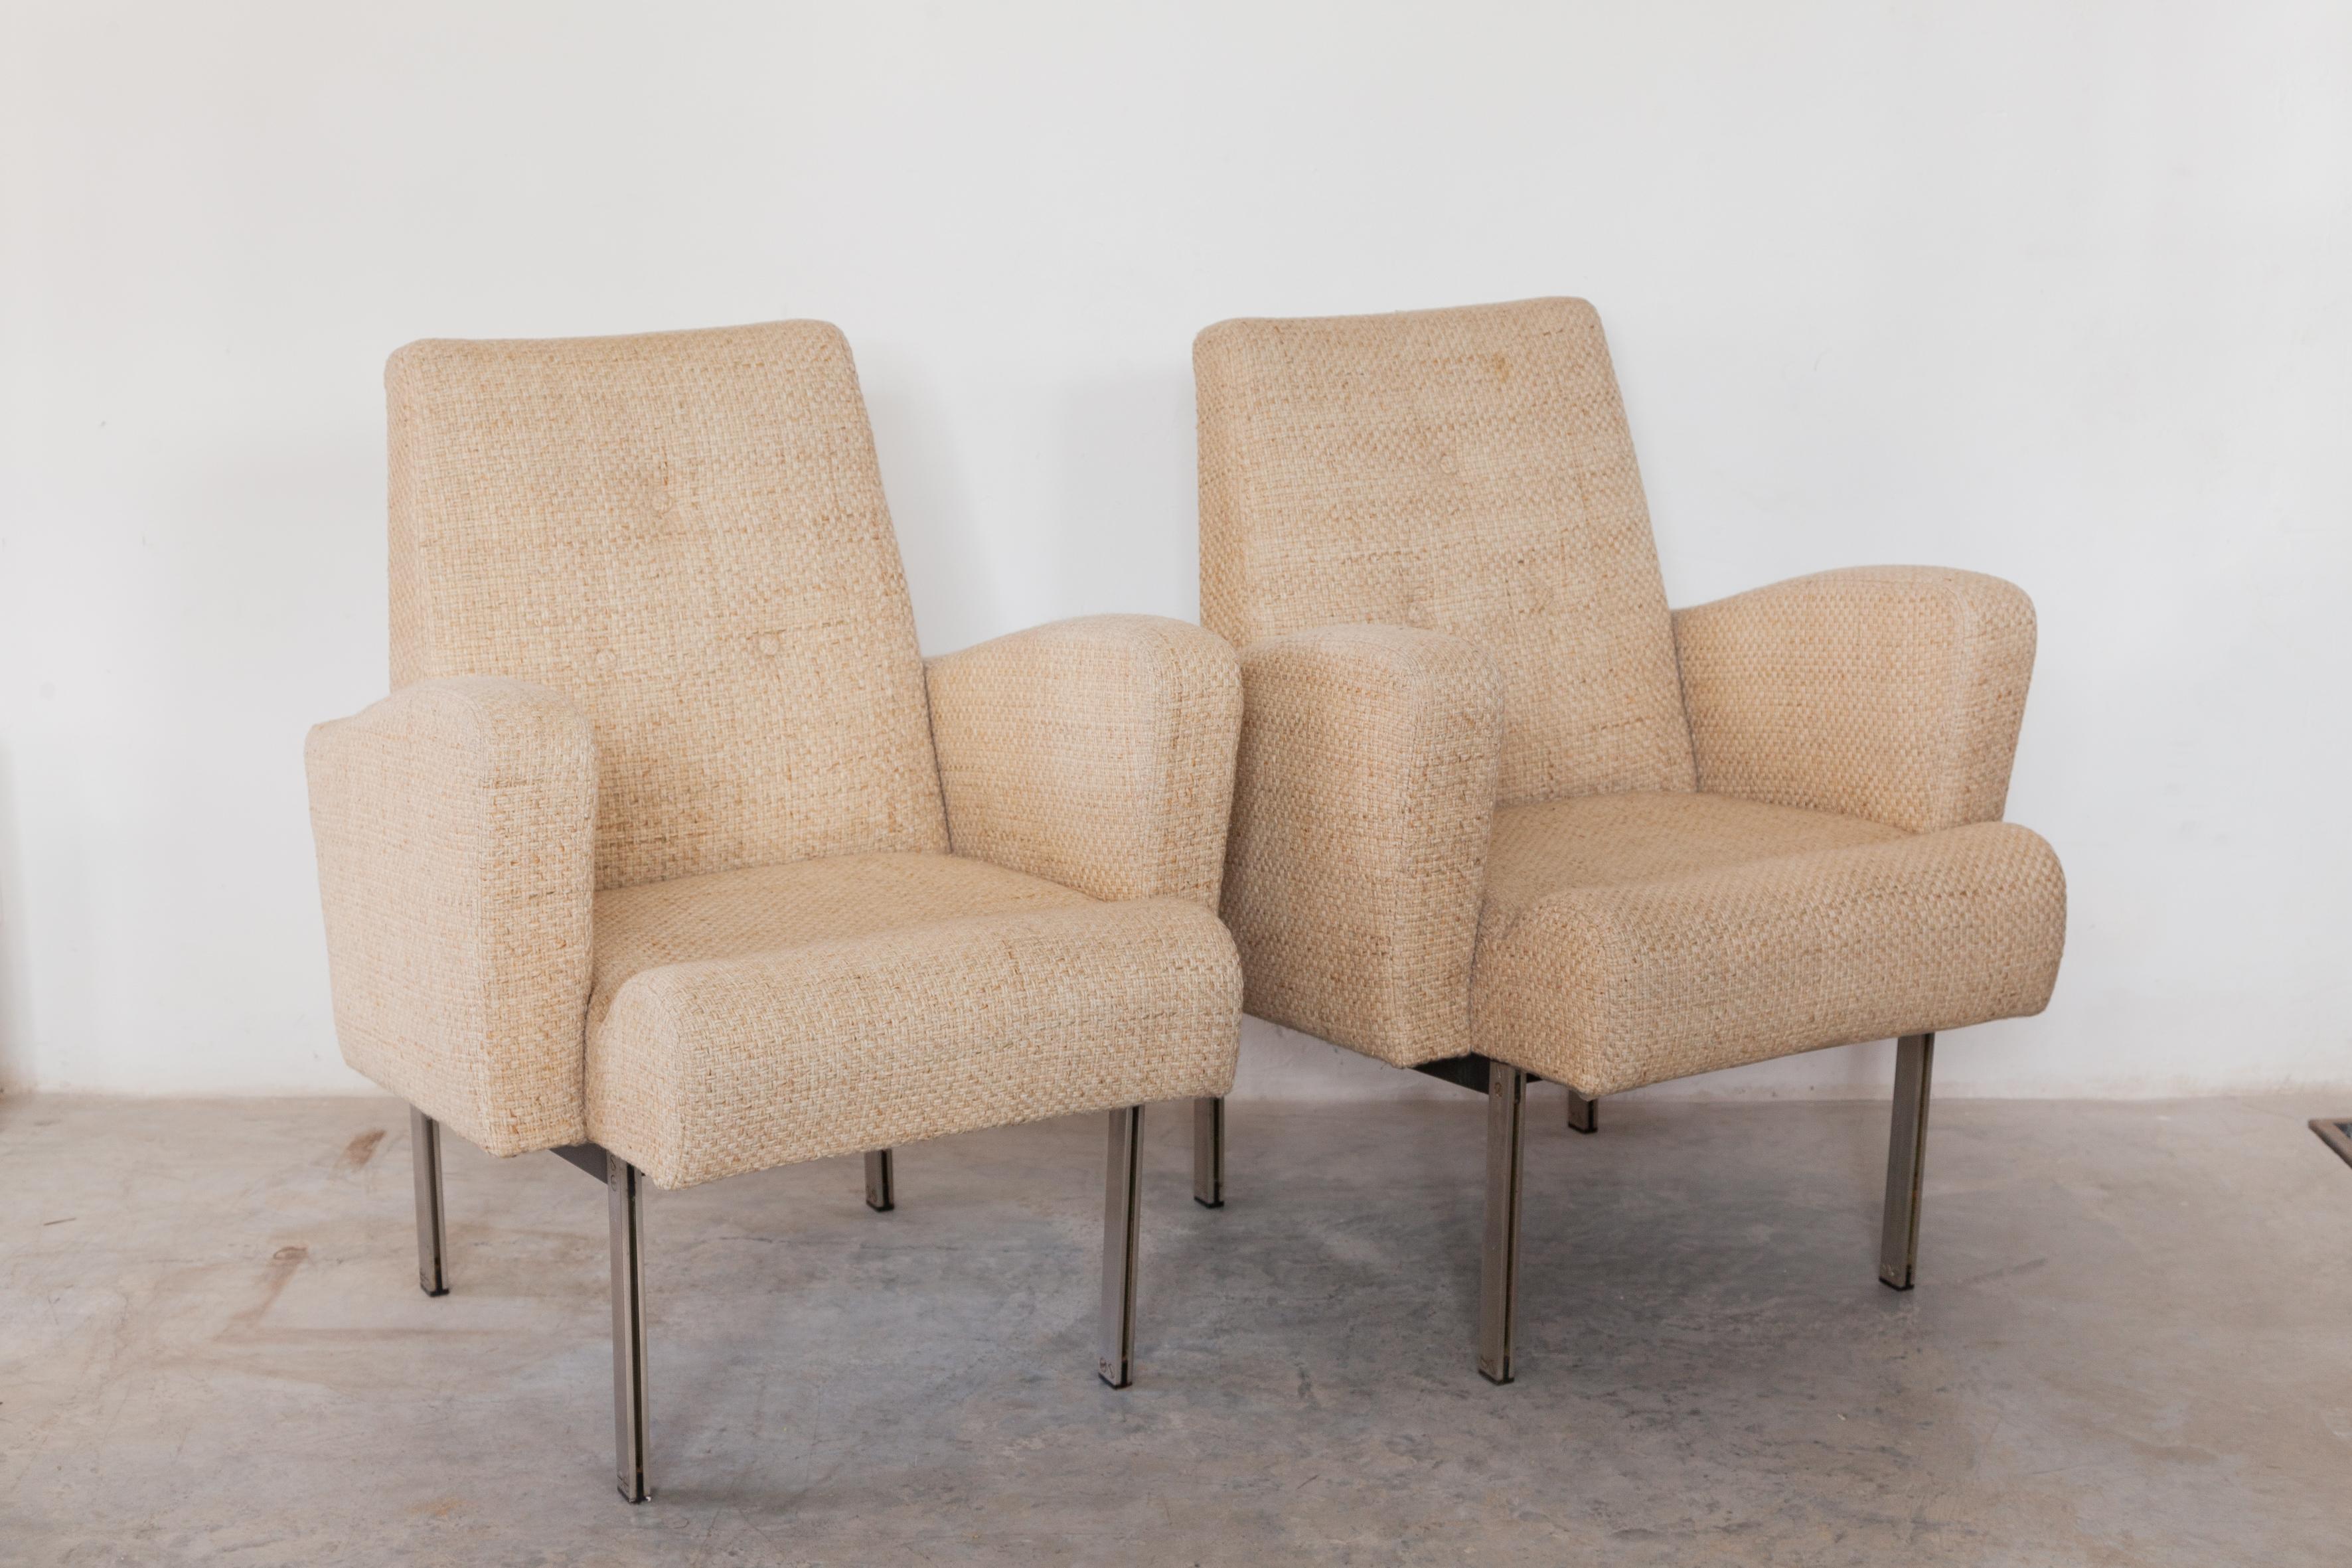 Un bel ensemble de chaises de salon confortables en acier chromé vintage dans le style conçu par Milo Baughman dans les années 1960. Ces chaises classiques et élégantes sont dotées d'un cadre architectural en chrome et d'une assise équipée de mousse